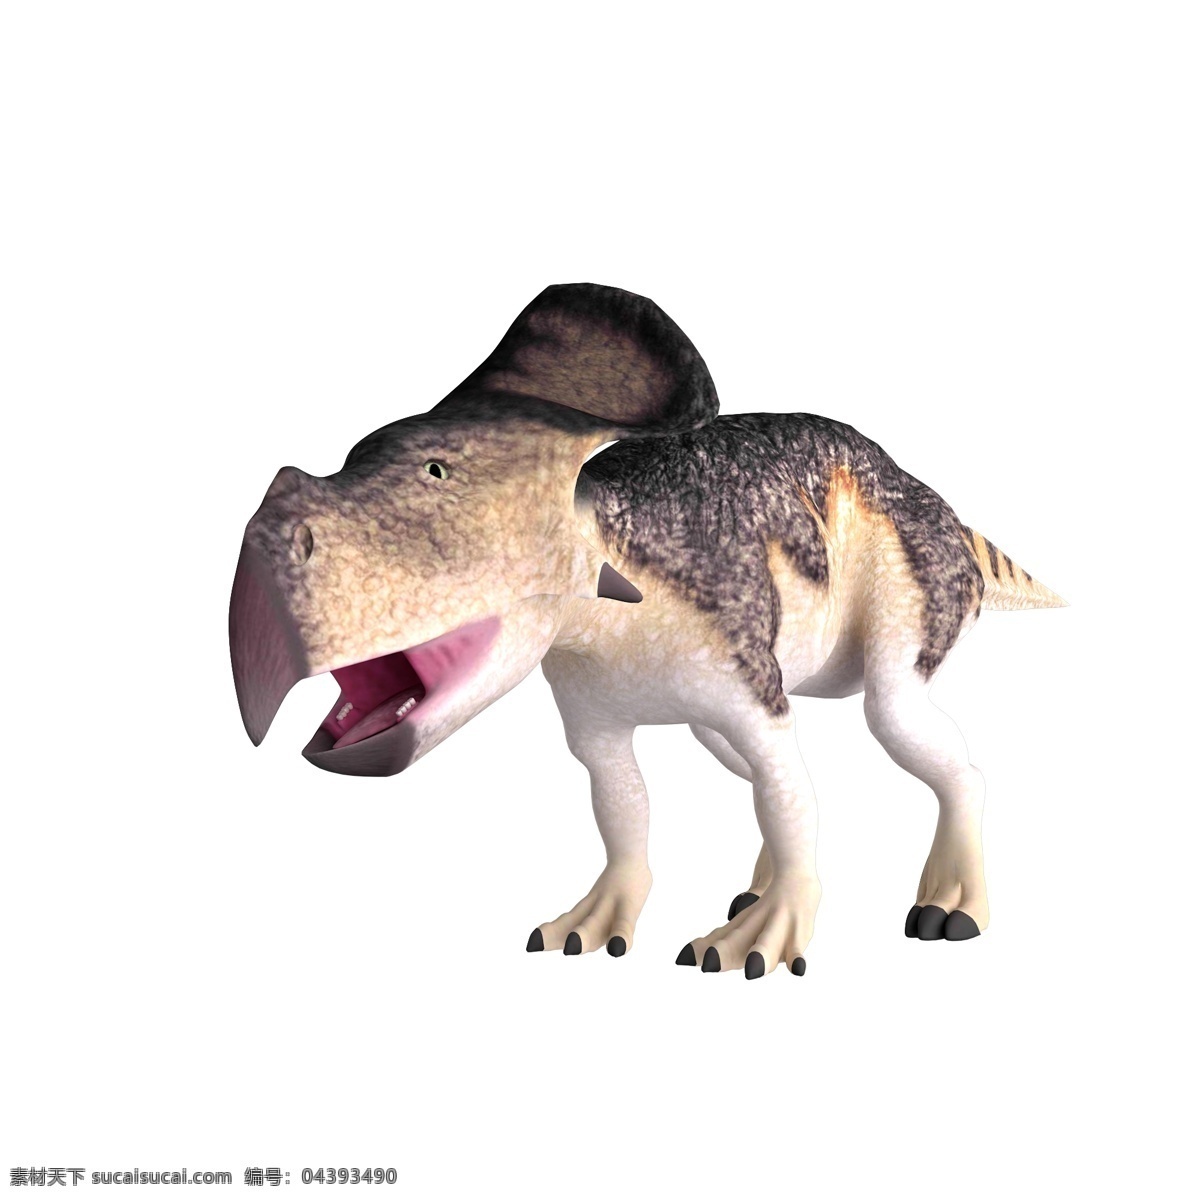 立体 恐龙 橘 色 立体恐龙 橘色恐龙 橘色 动物 立体动物 橘色动物 凶猛恐龙 凶猛动物 凶猛